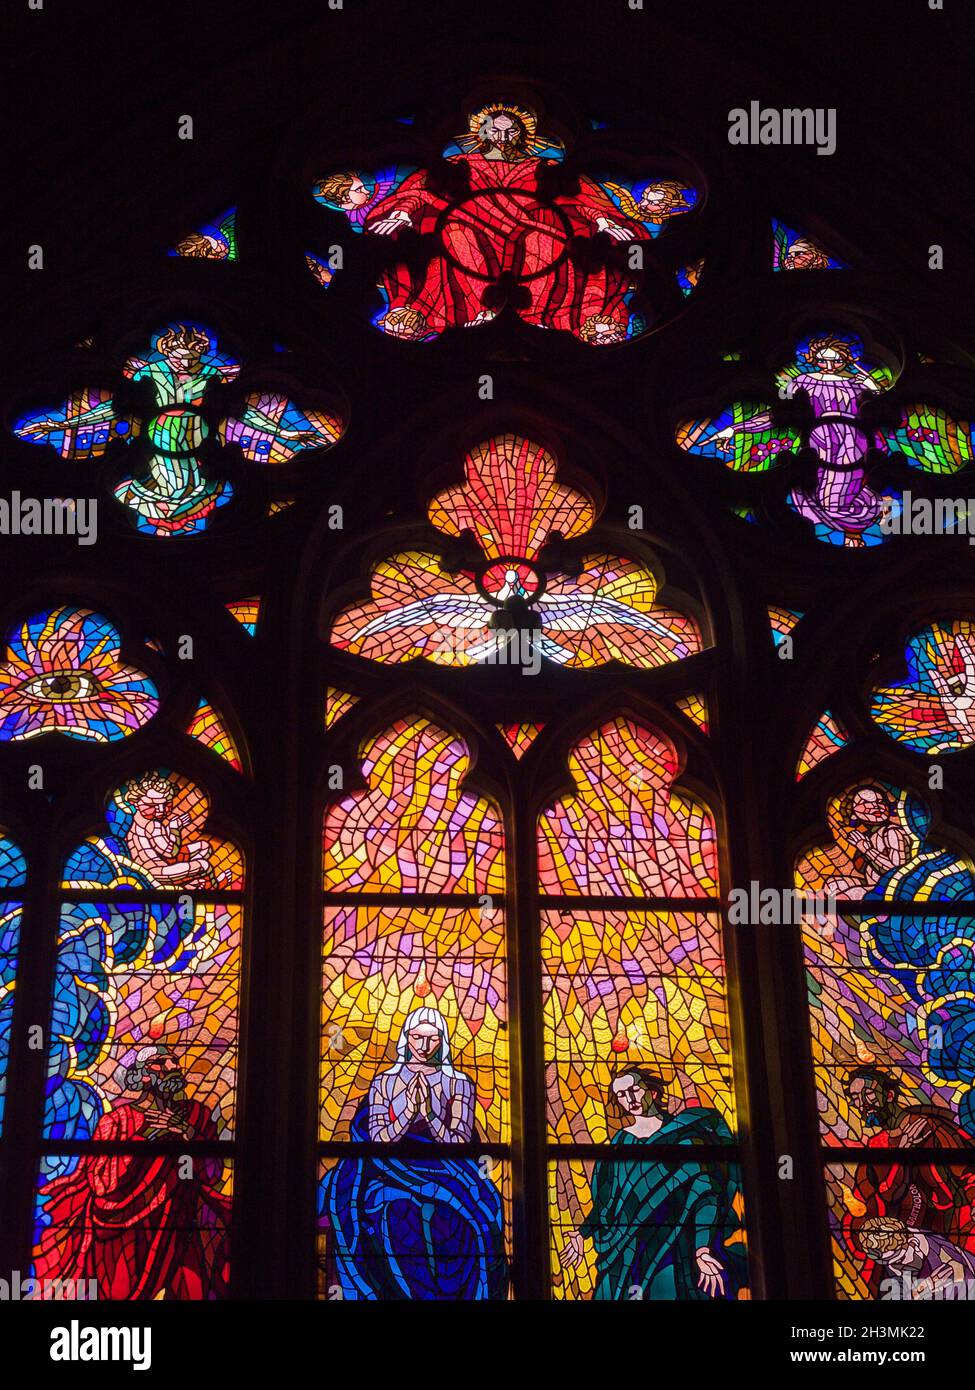 Detalle de vitrales en la Capilla de San Ludmila: Detalle de una vidriera moderna muy colorida en la Chaple de San Ludmila en la Catedral de Praga. Foto de stock